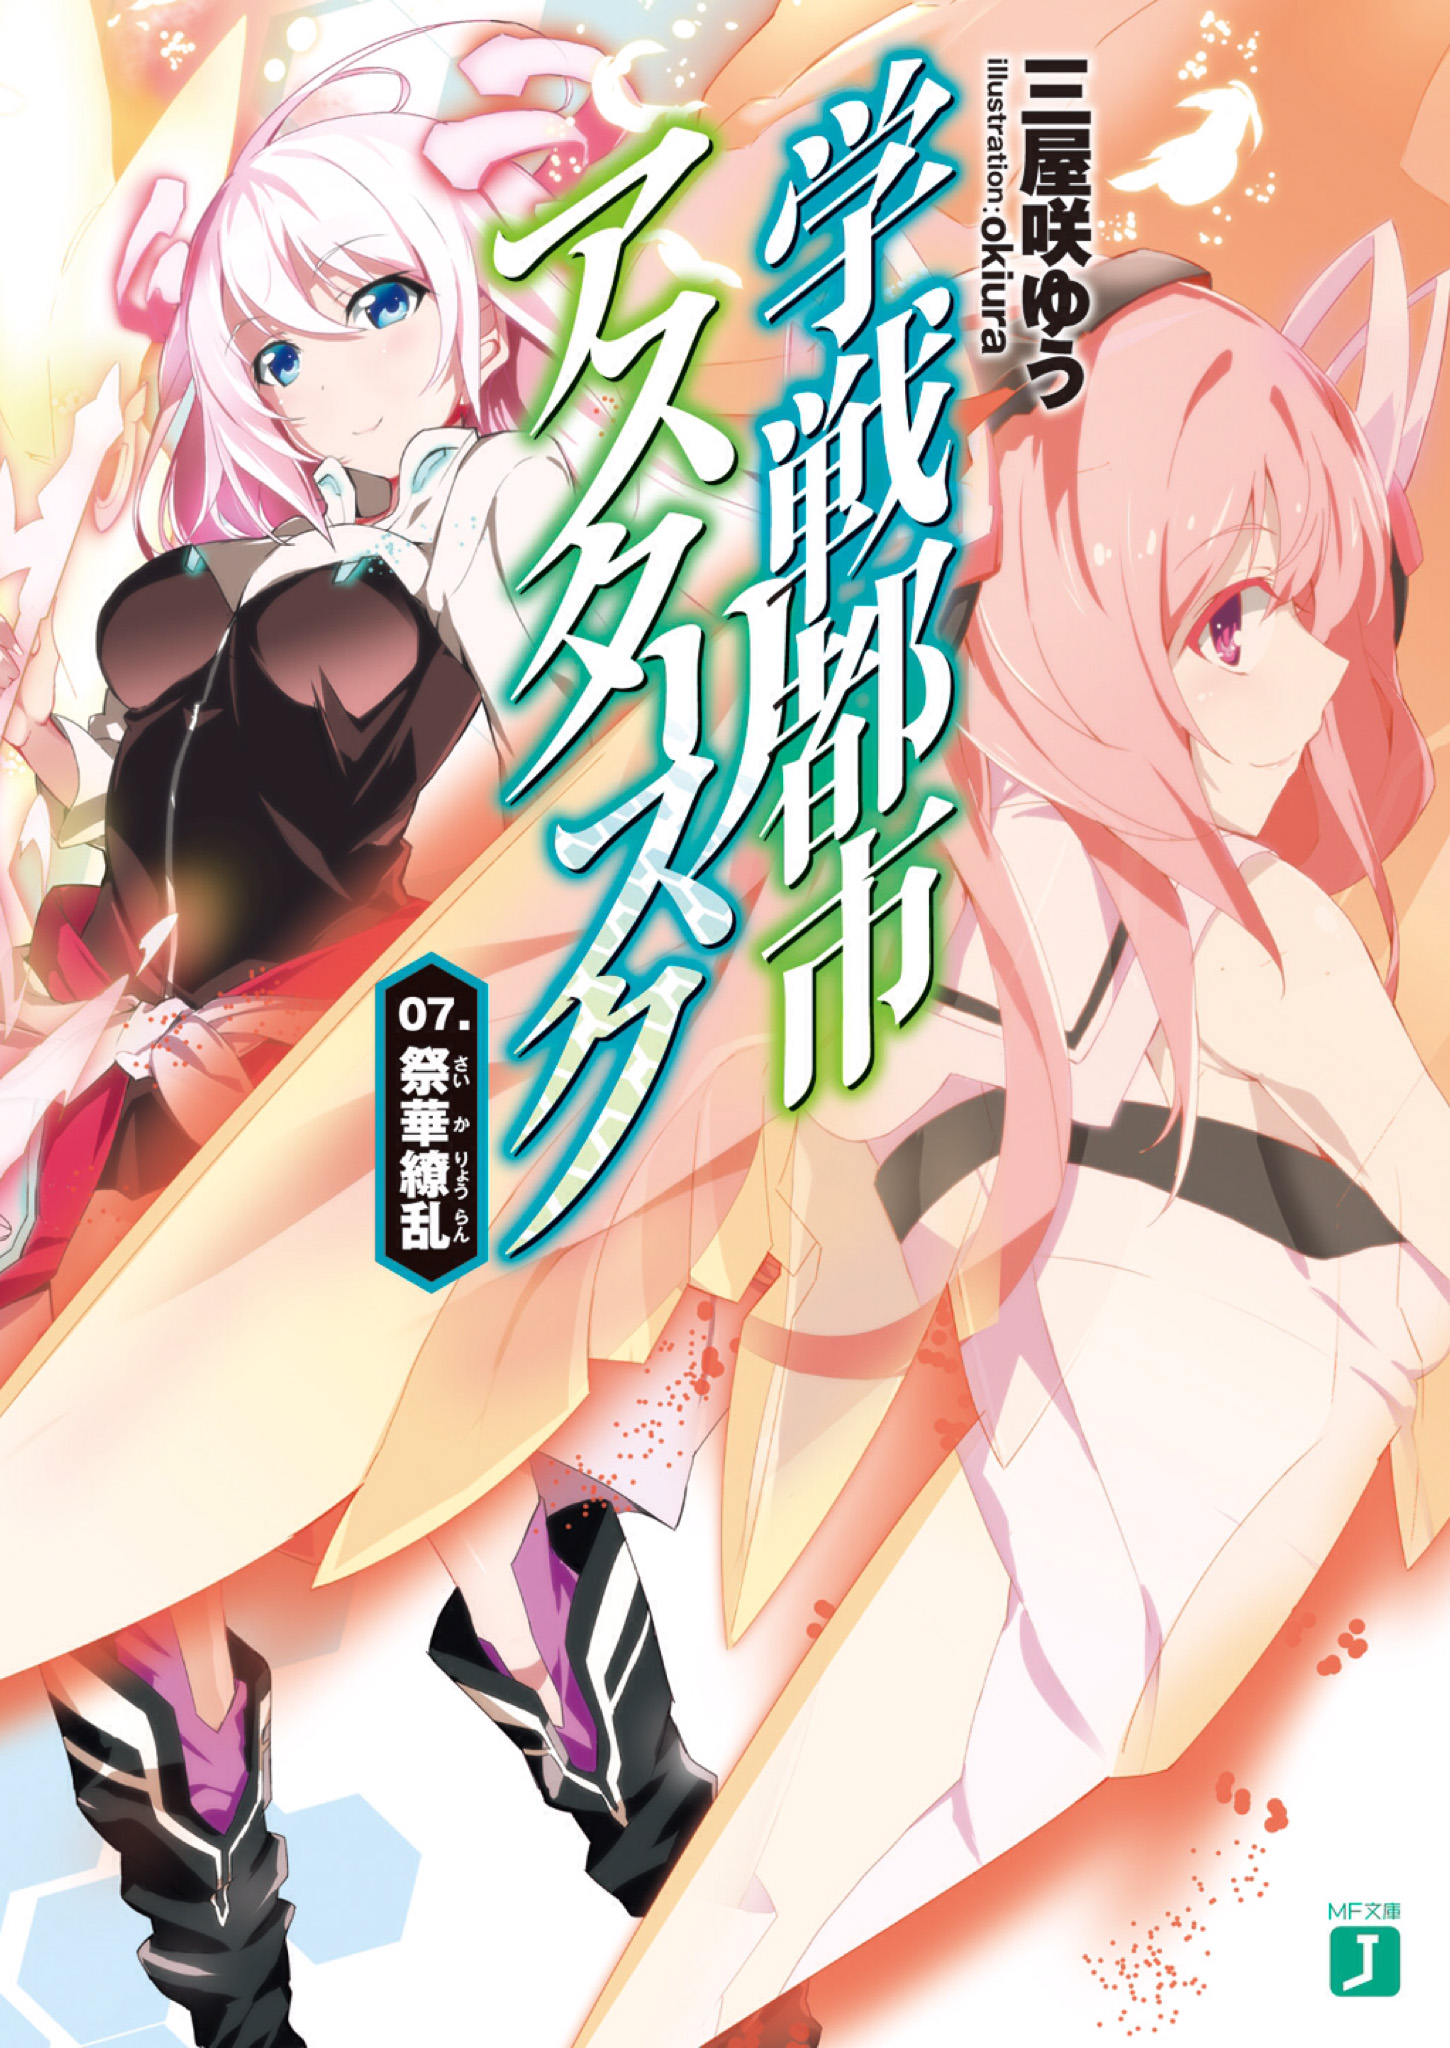 Gakusen Toshi Asterisk Light Novel Cover Vol 10